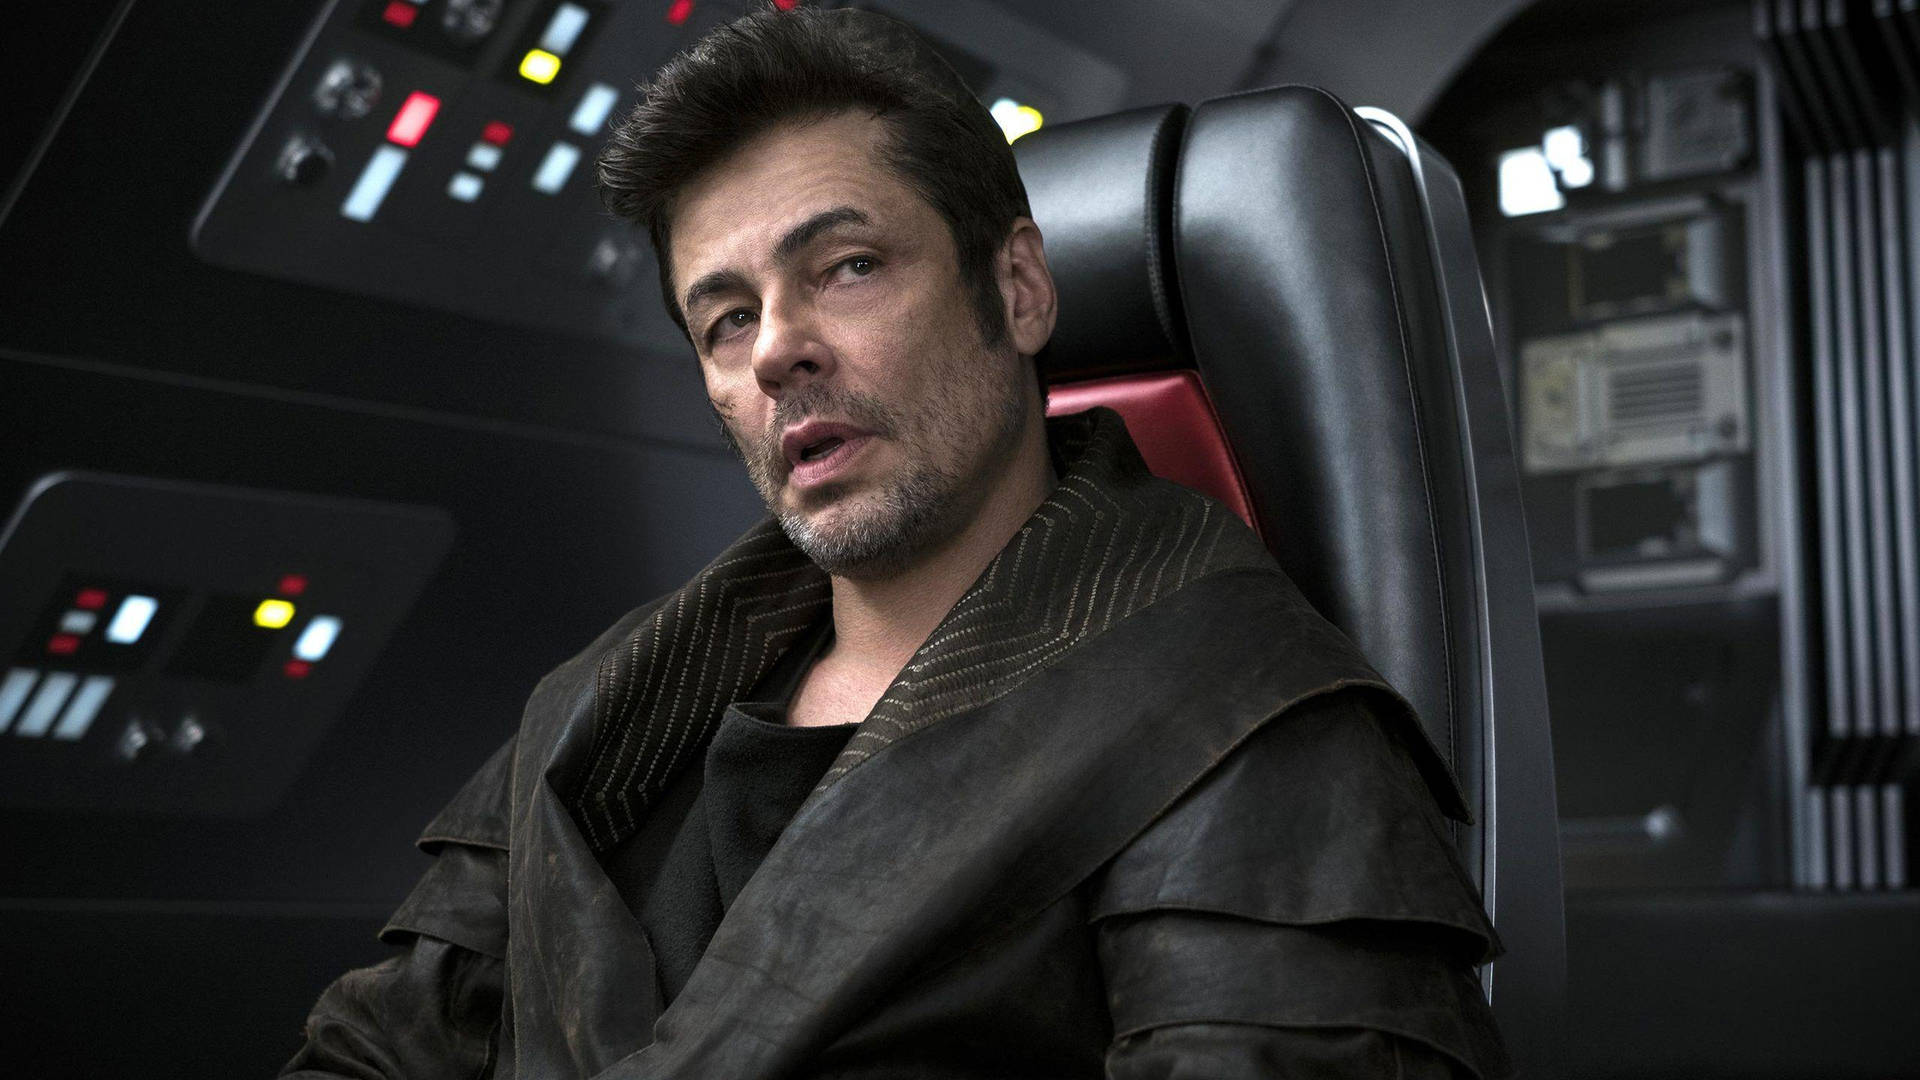 Benicio Del Toro As Dj In Star Wars 2017 Picture